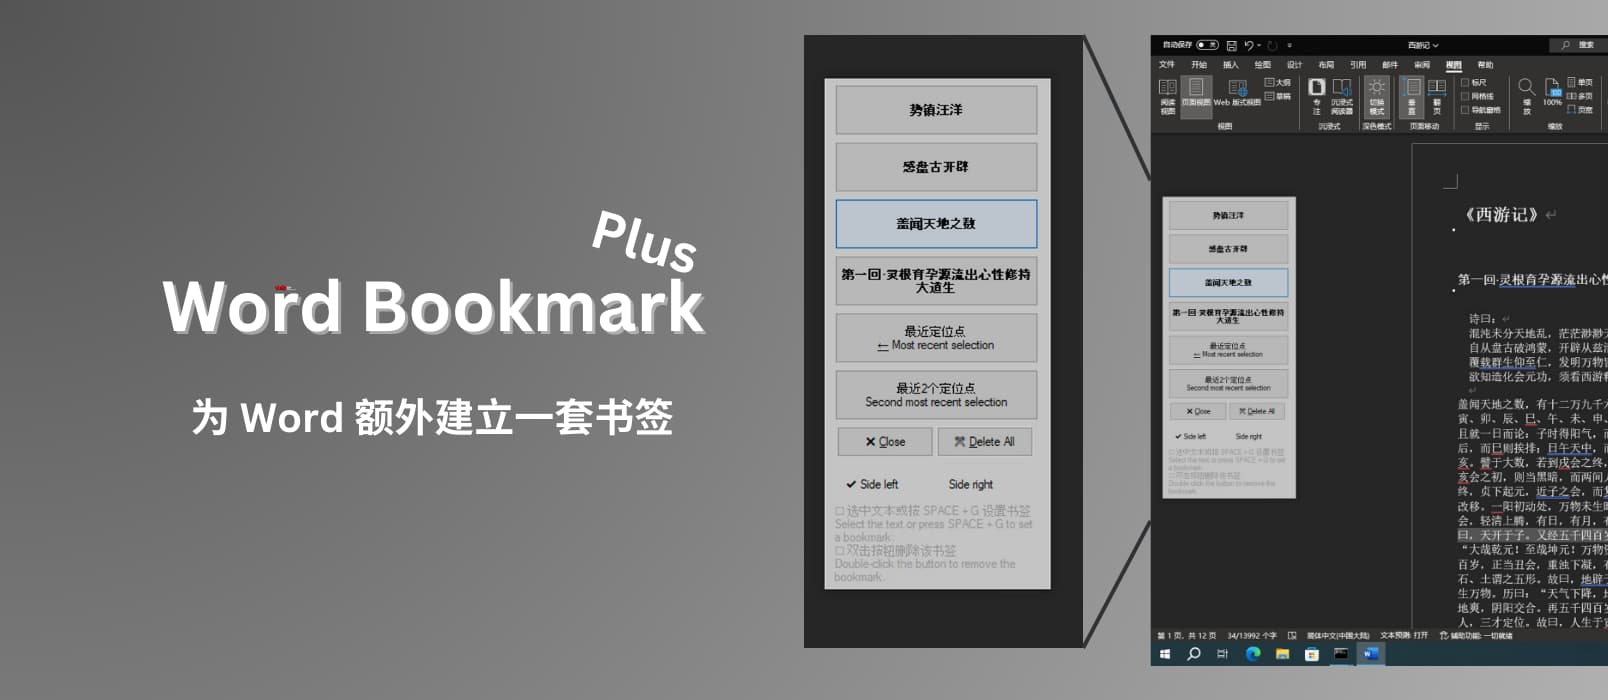 Word Bookmark Plus - 为 Word 额外建立书签，在文档内快速跳转[Windows]